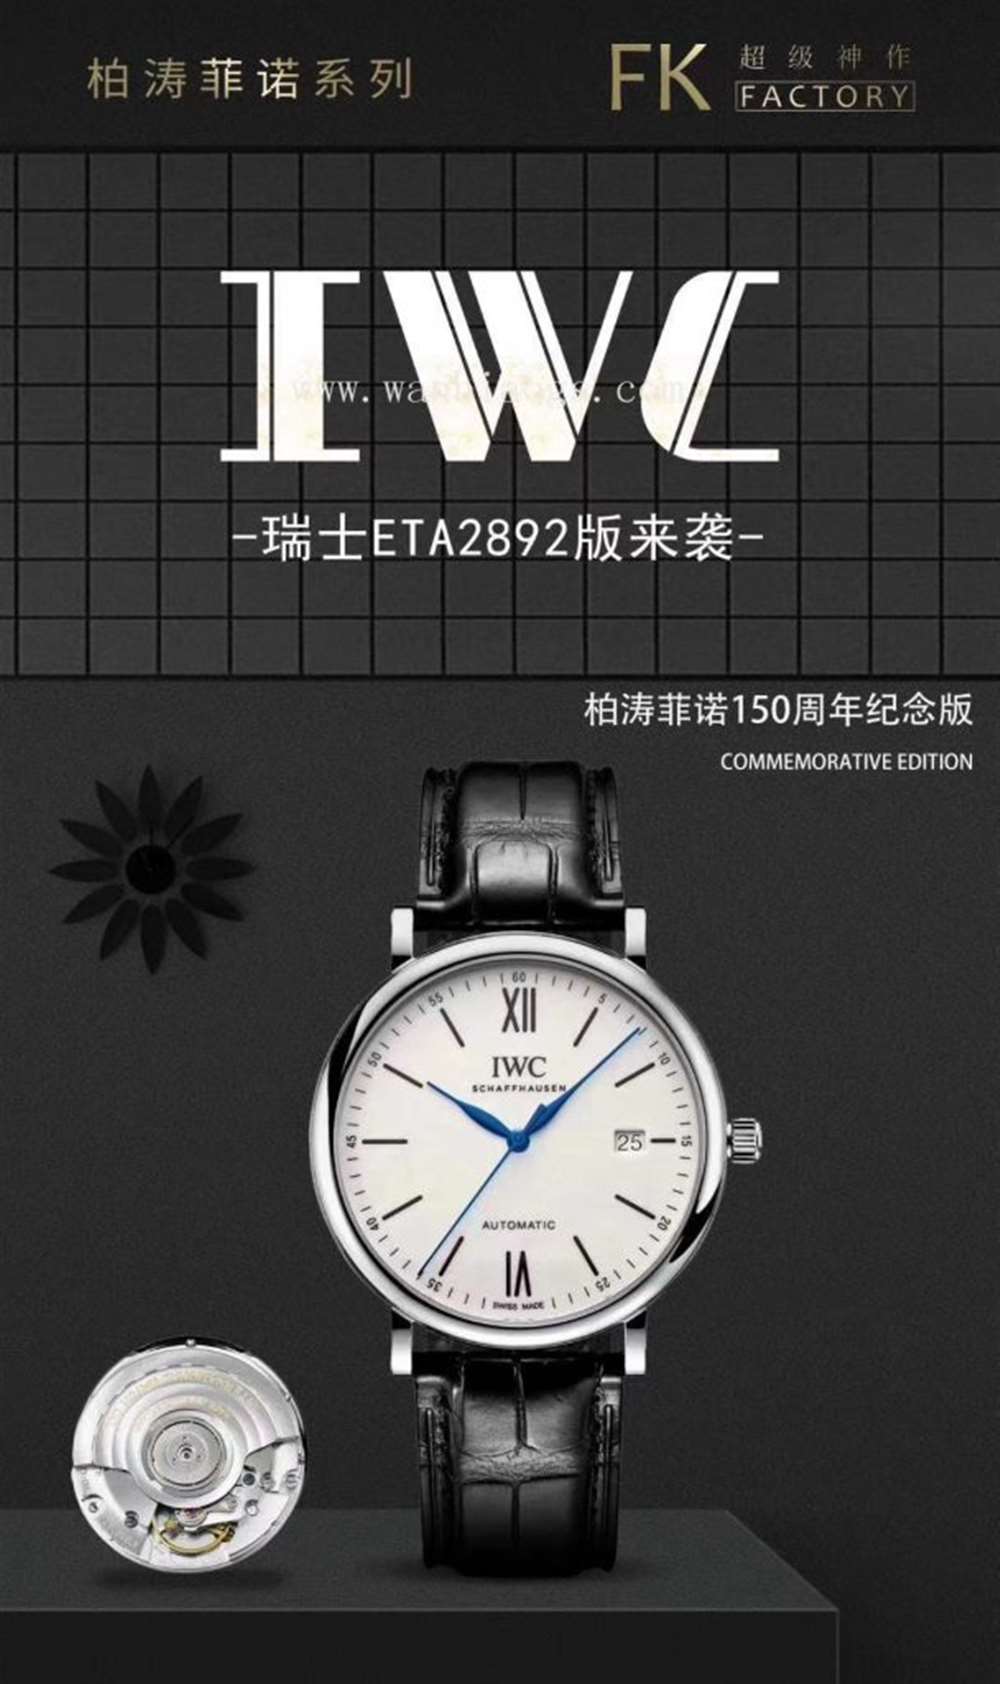 FK厂万国柏涛菲诺系列IW35630腕表—对比正品评测  第19张